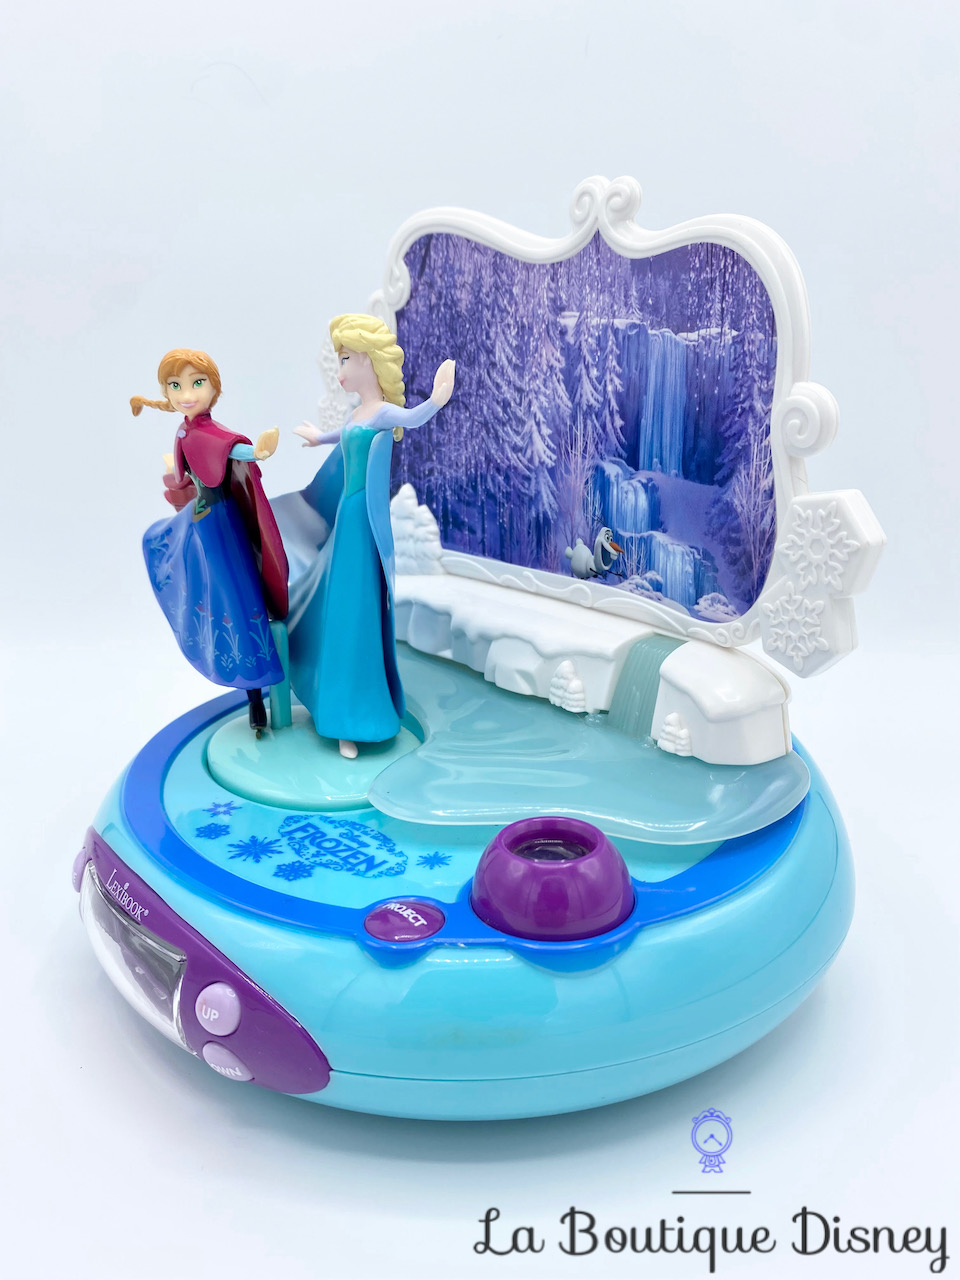 Radio Réveil Buzz l'Éclair Toy Story Lexibook Disney projecteur horloge -  Maison/Réveils et Veilleuses - La Boutique Disney